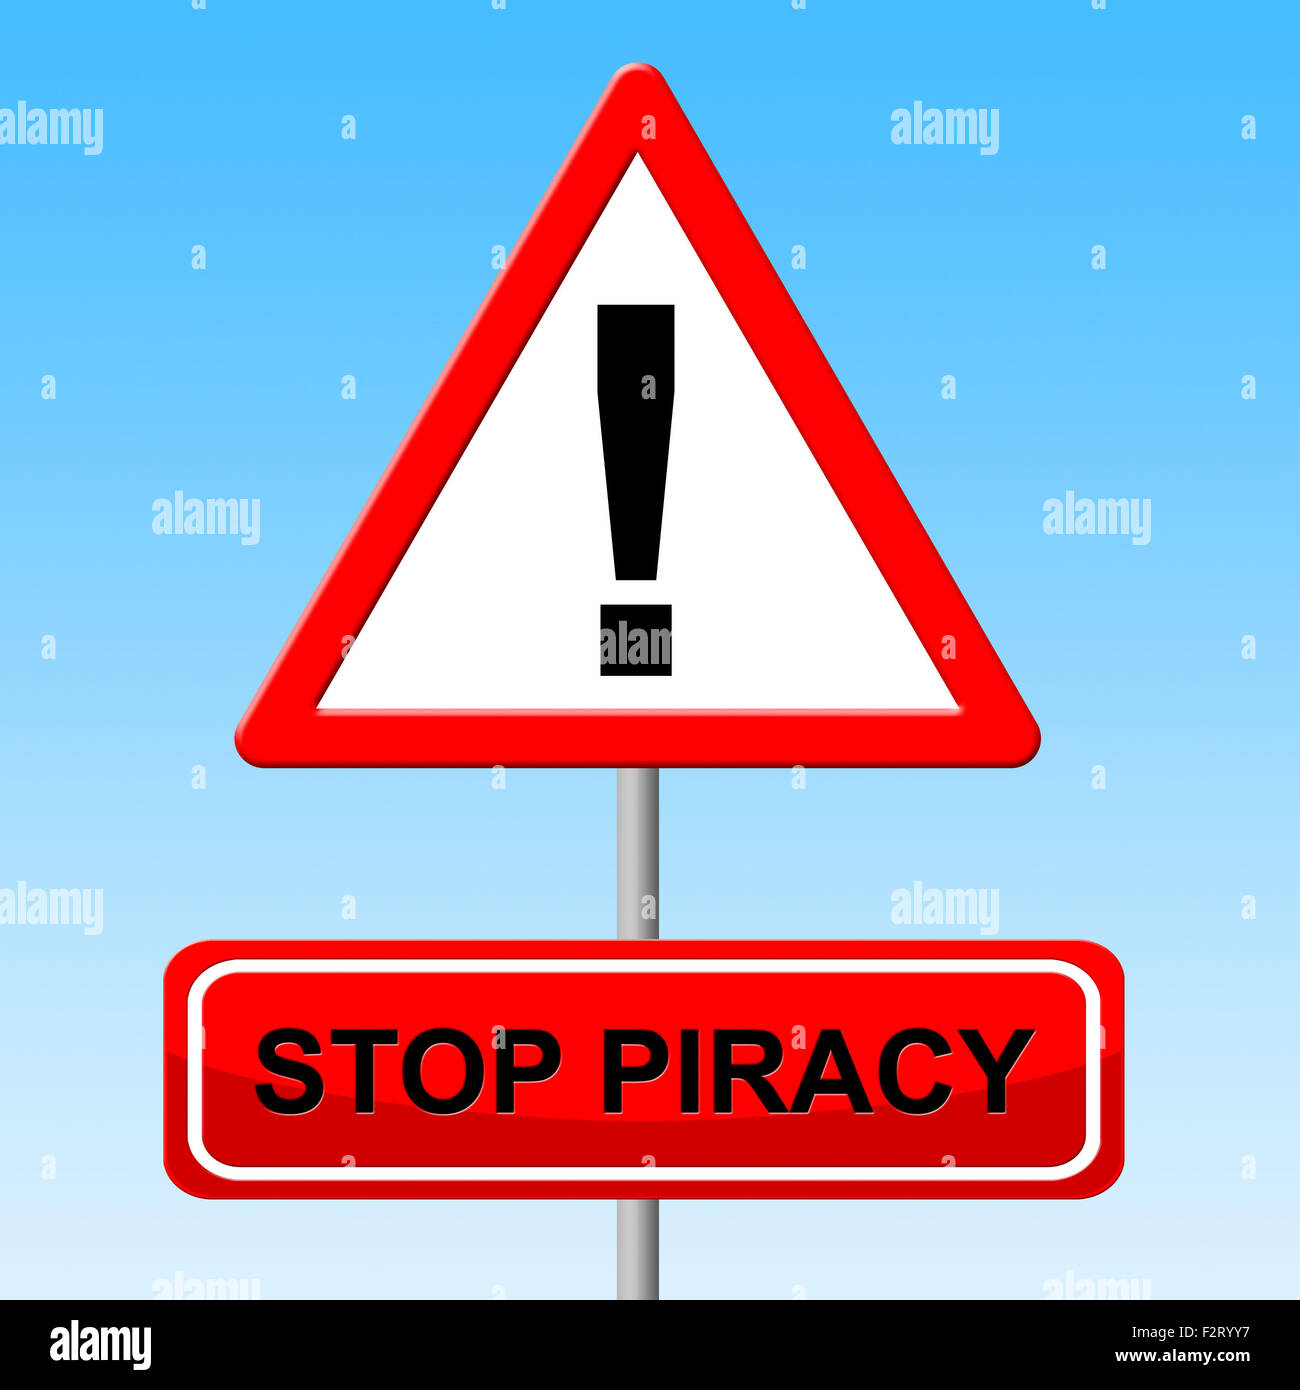 Stop Piracy Vertretung Warnung Lizenz und Kontrolle Stockfoto